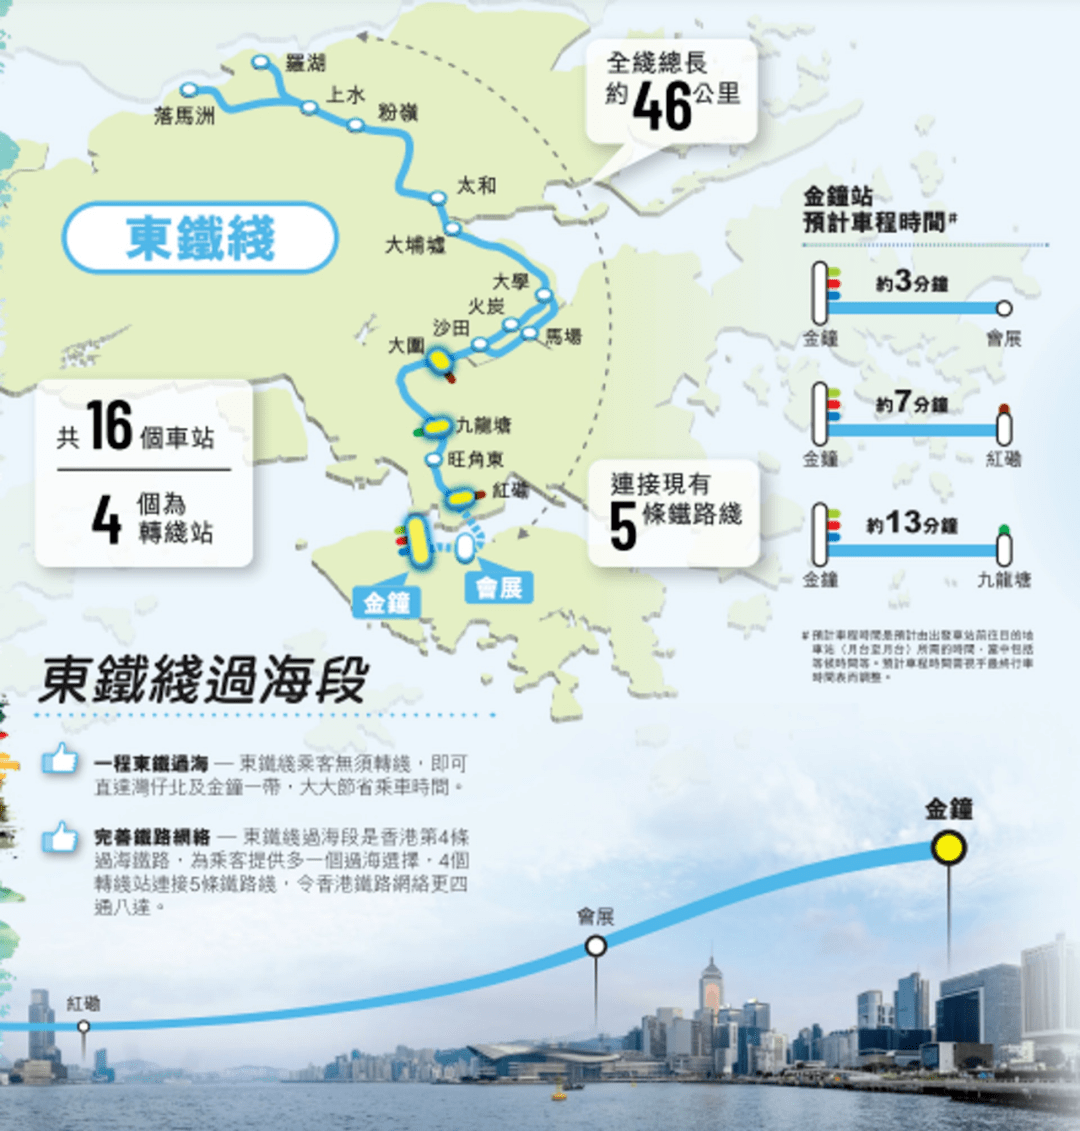 香港疫情地图港府图片